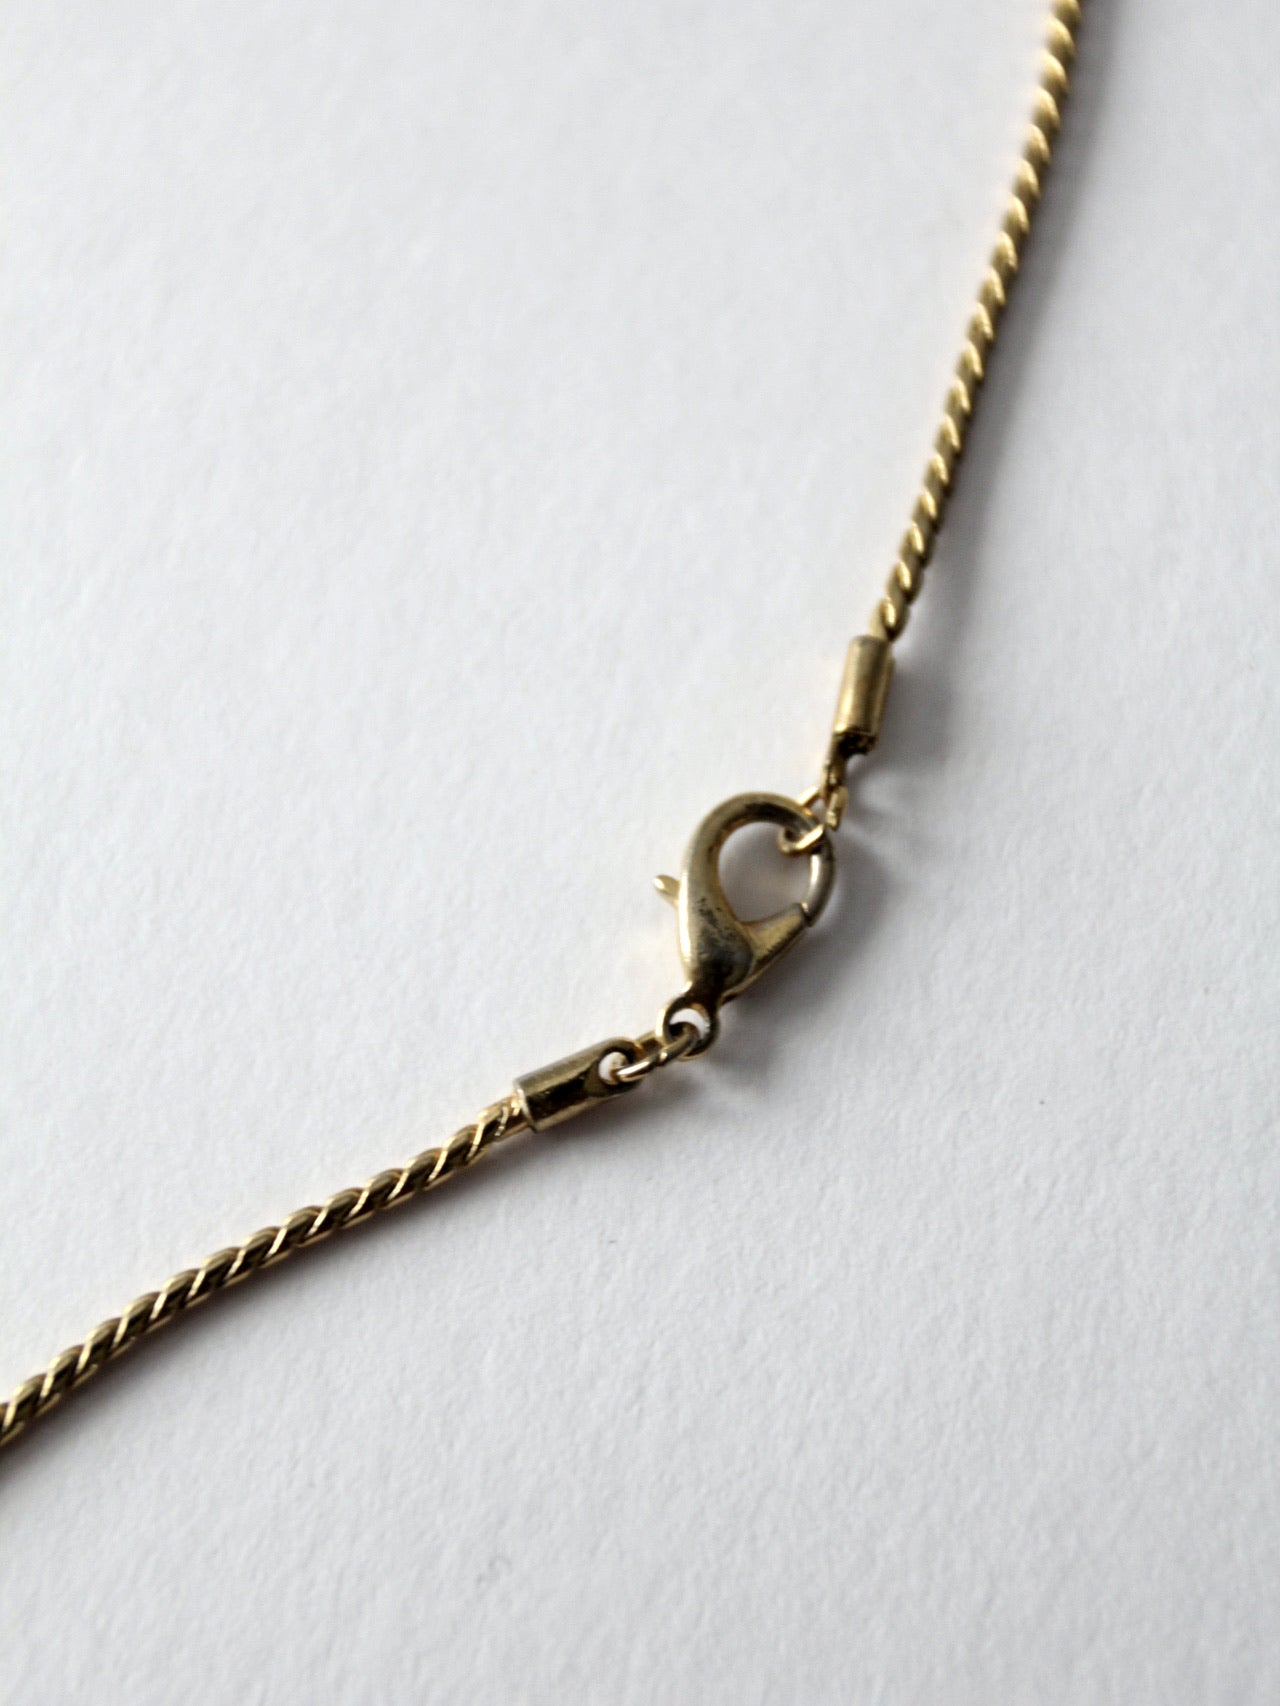 vintage long pendant necklace